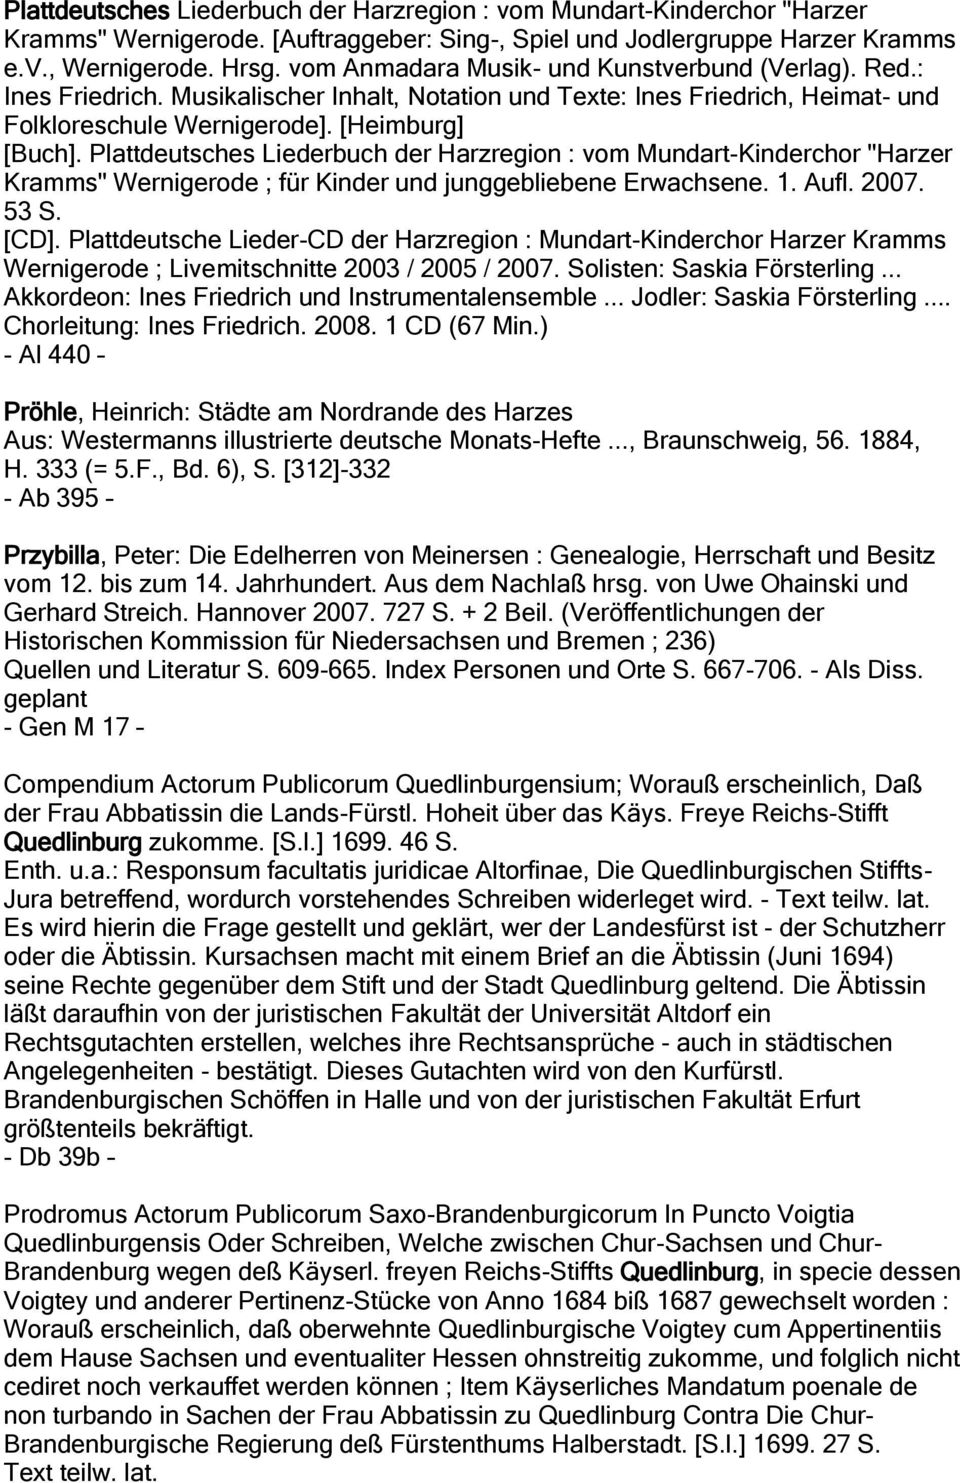 Plattdeutsches Liederbuch der Harzregion : vom Mundart-Kinderchor "Harzer Kramms" Wernigerode ; für Kinder und junggebliebene Erwachsene. 1. Aufl. 2007. 53 S. [CD].